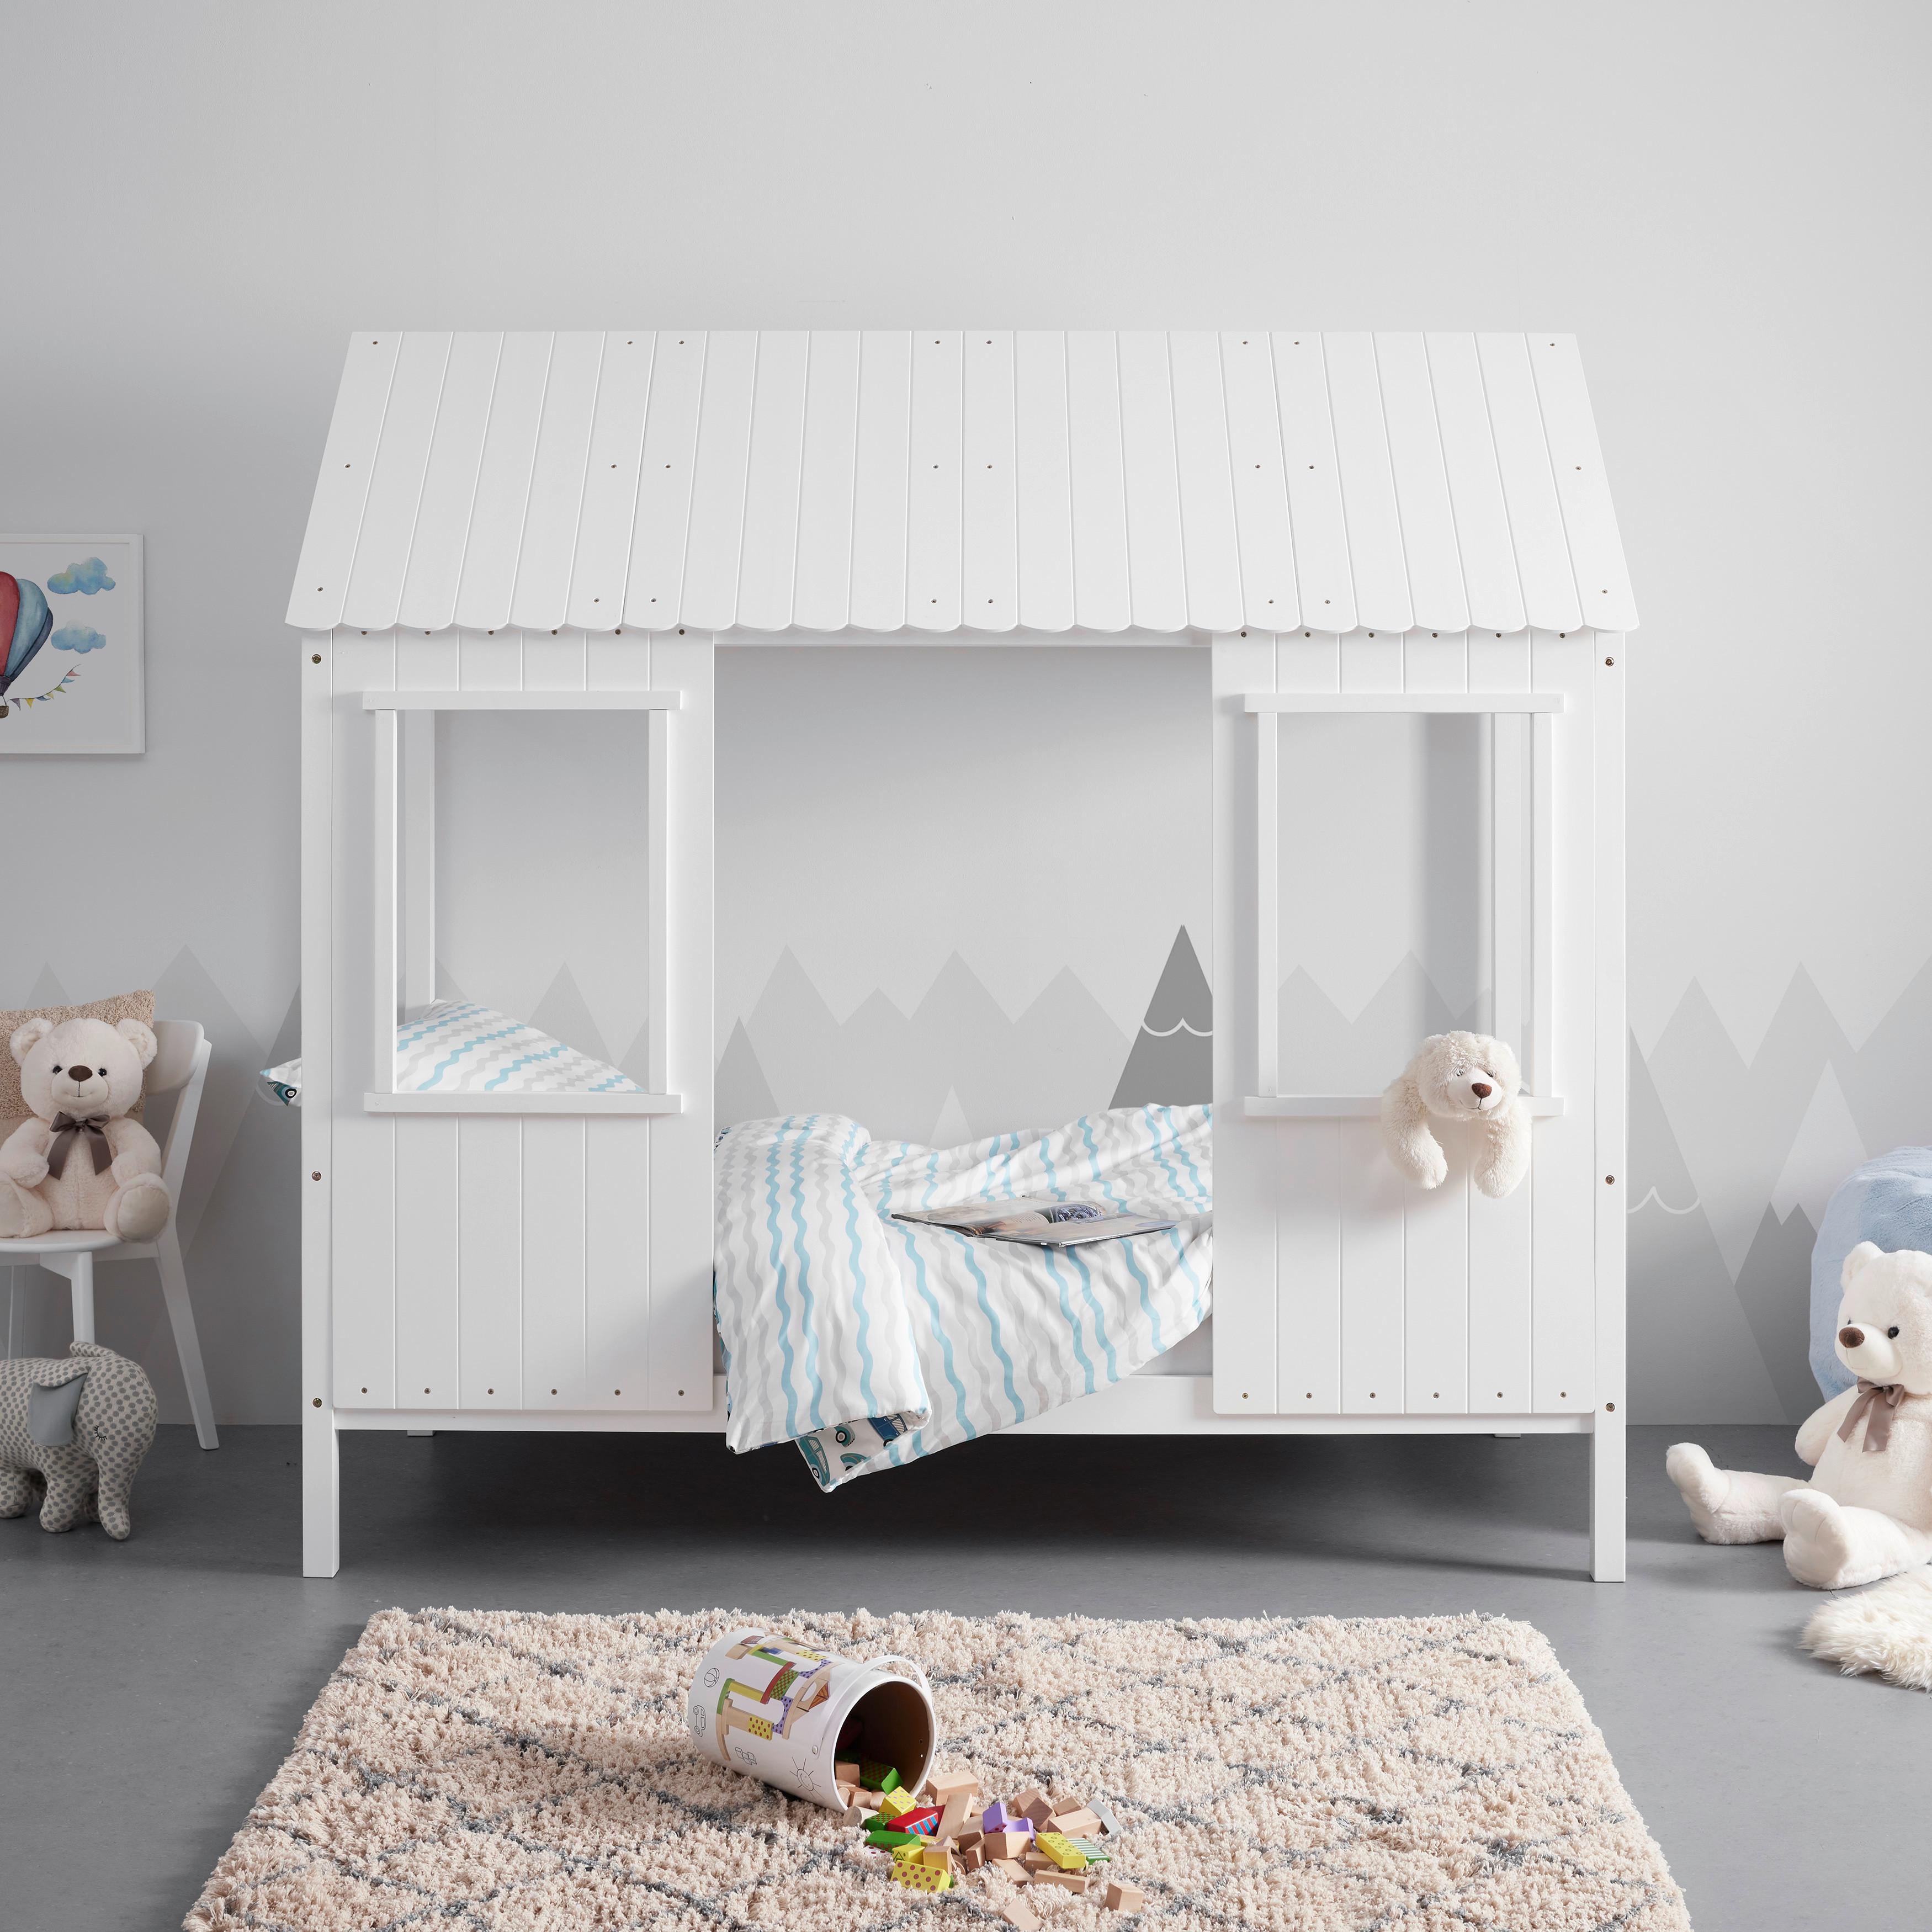 Kinderbett massiv, weiß, "Adana" - Naturfarben/Weiß, MODERN, Holz (97/198/208cm) - Bessagi Kids